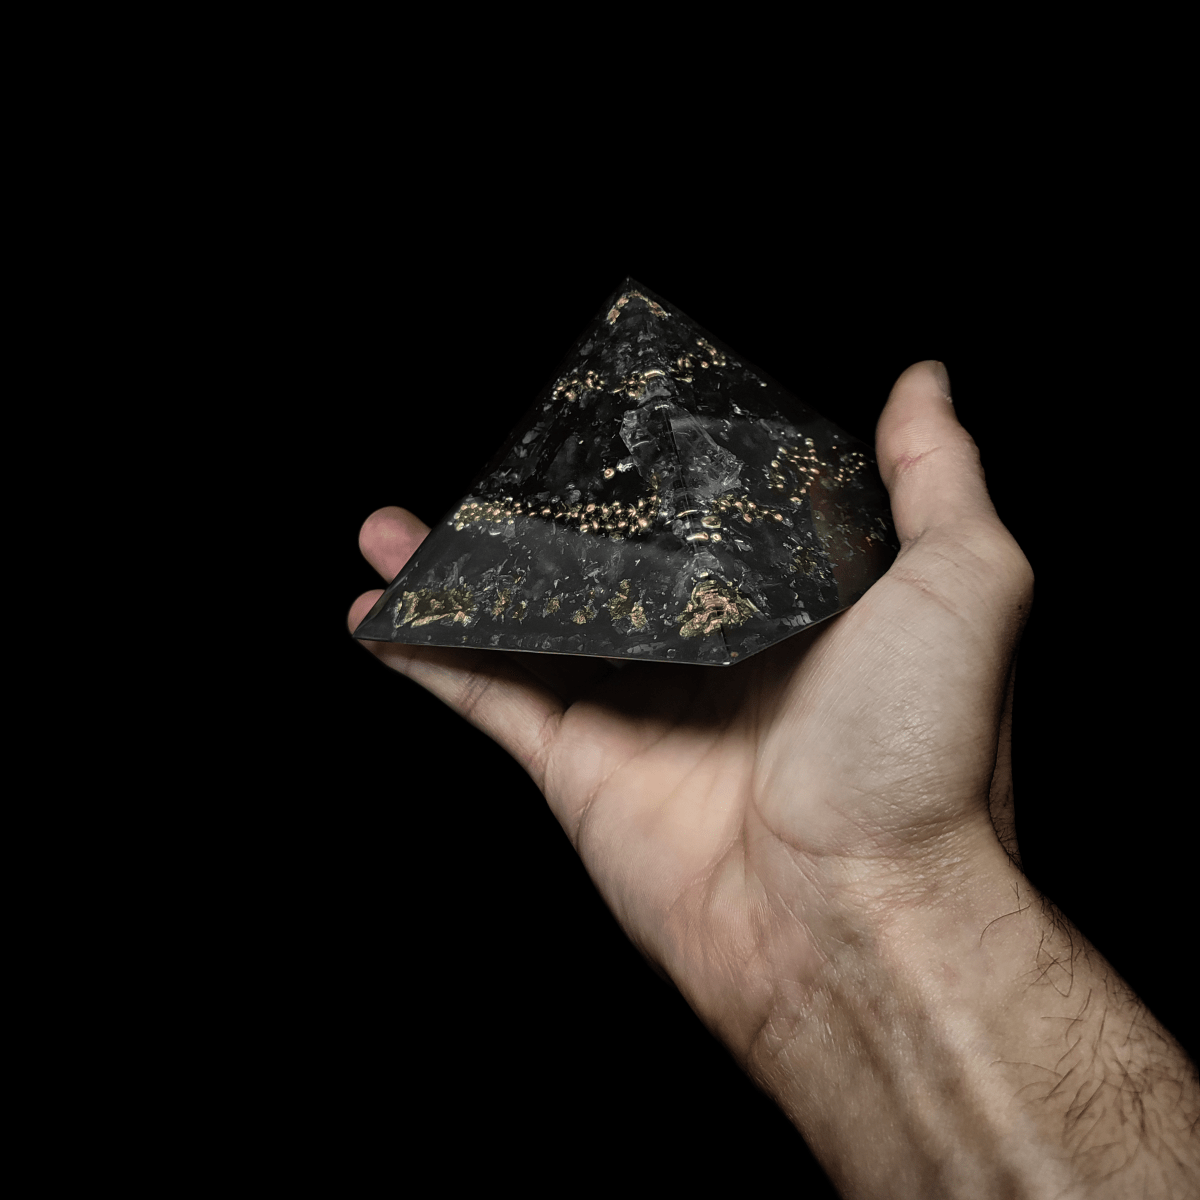 Grau Orgonit Pyramide aus dem Edelstein Rauchquarz mit goldenen Elementen.